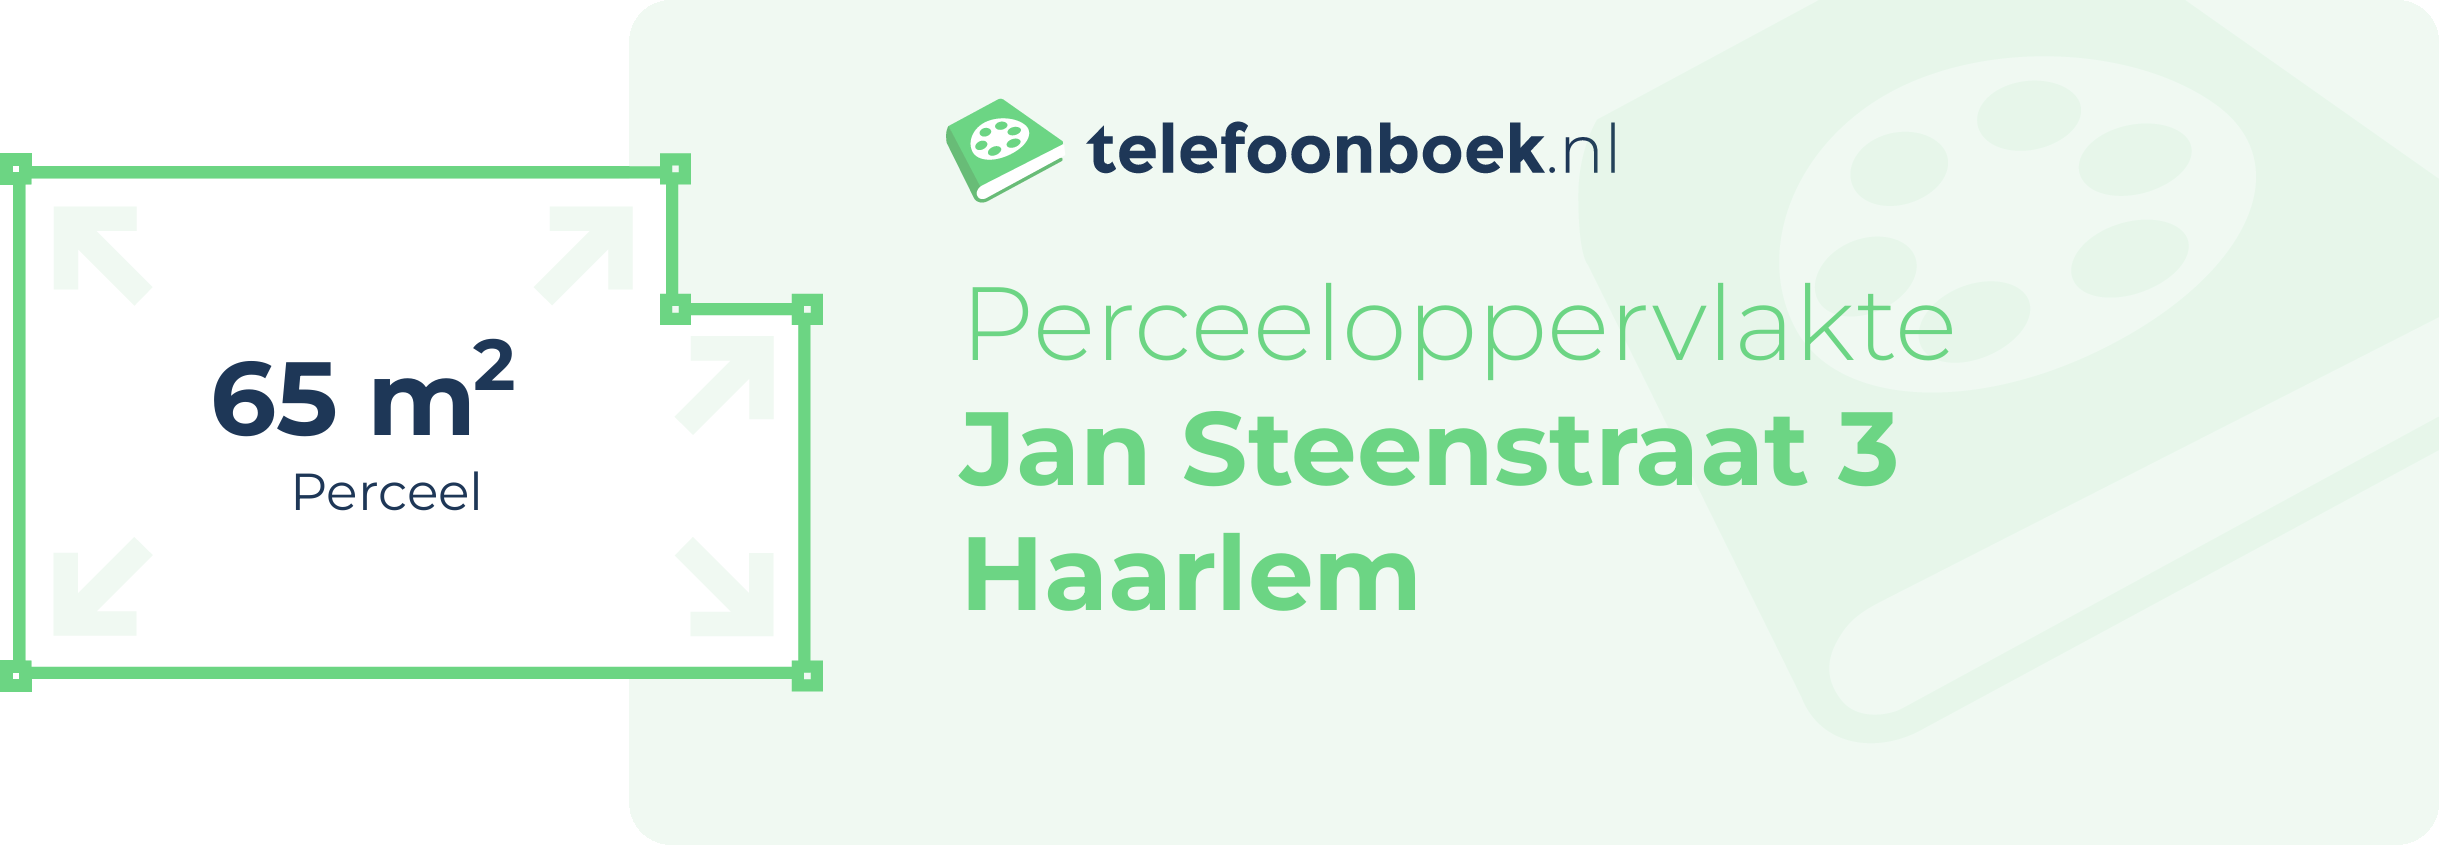 Perceeloppervlakte Jan Steenstraat 3 Haarlem